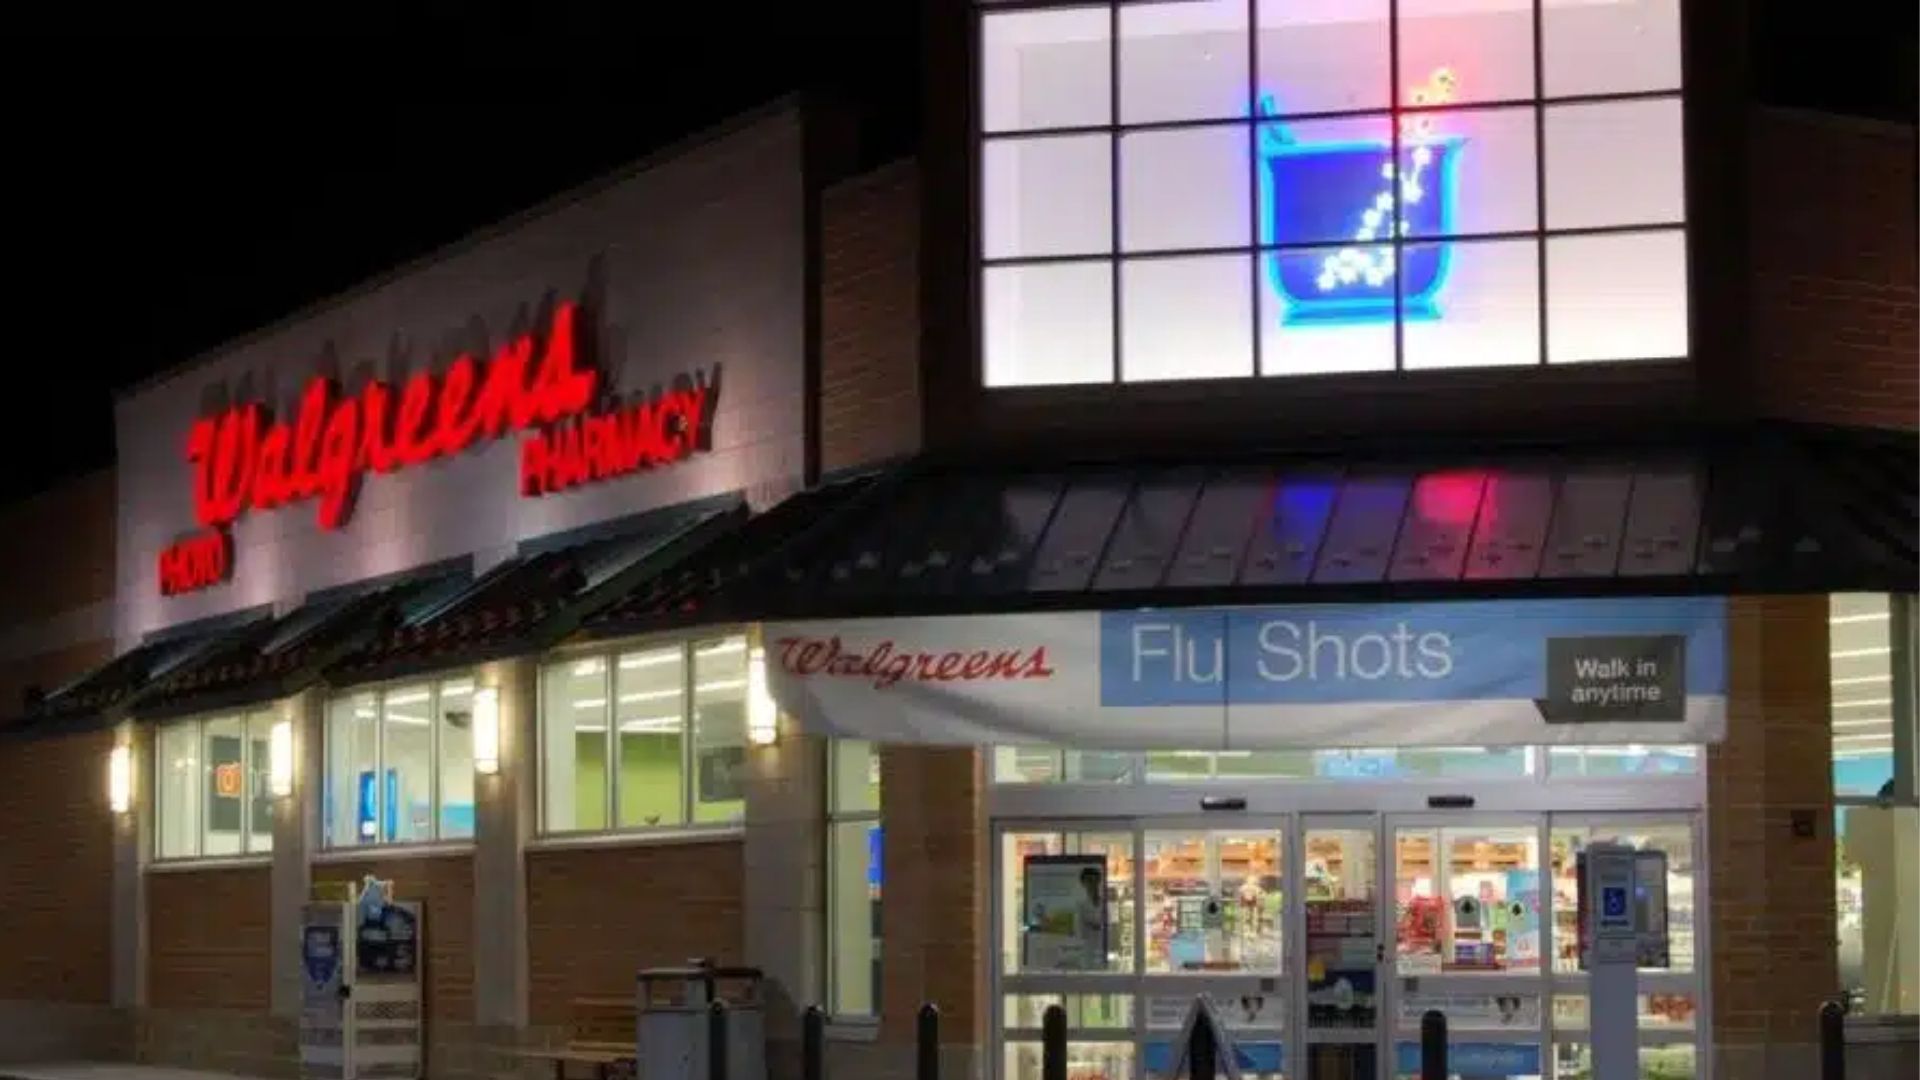 El declive de la conveniencia: Por qué las farmacias como Walgreens están cerrando tiendas